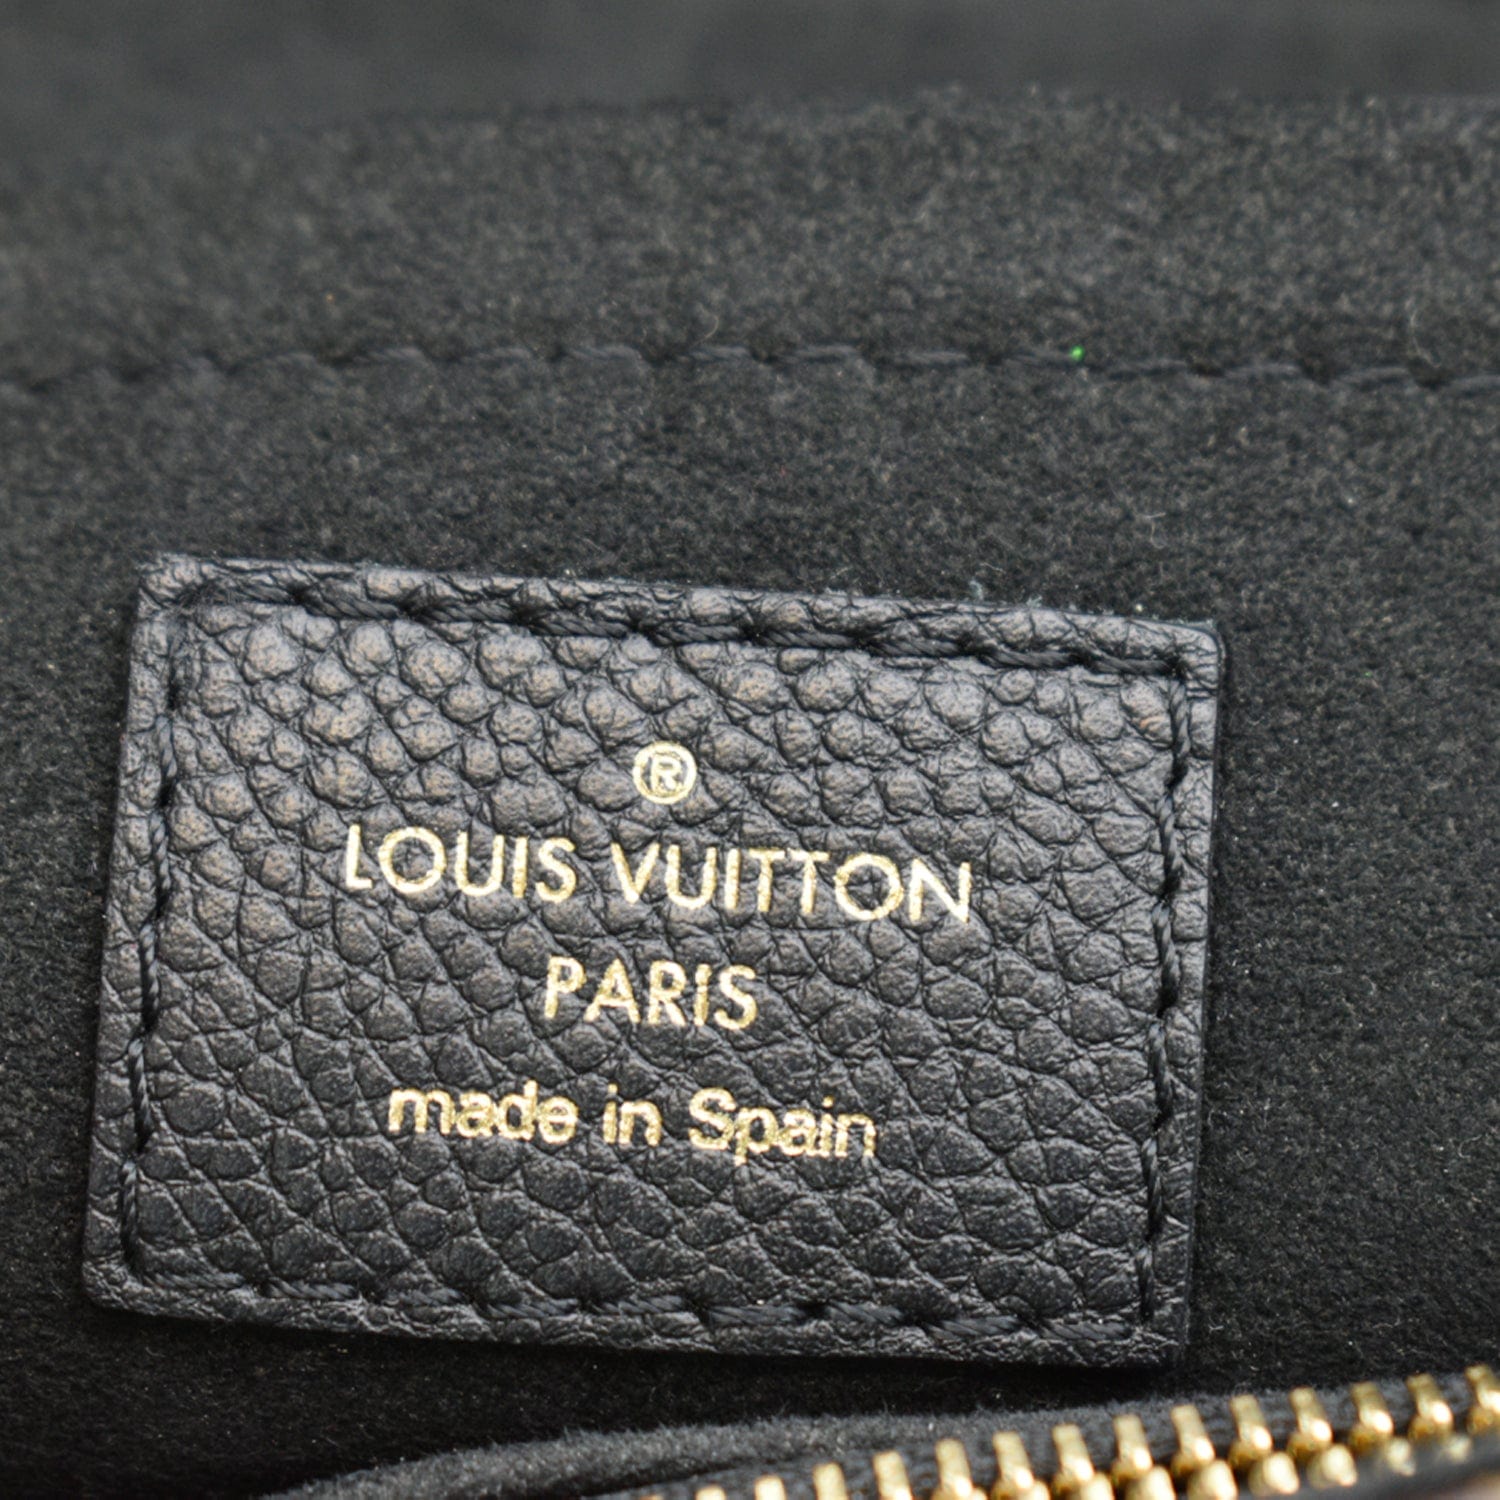 review] Louis Vuitton Saint Placide Noir